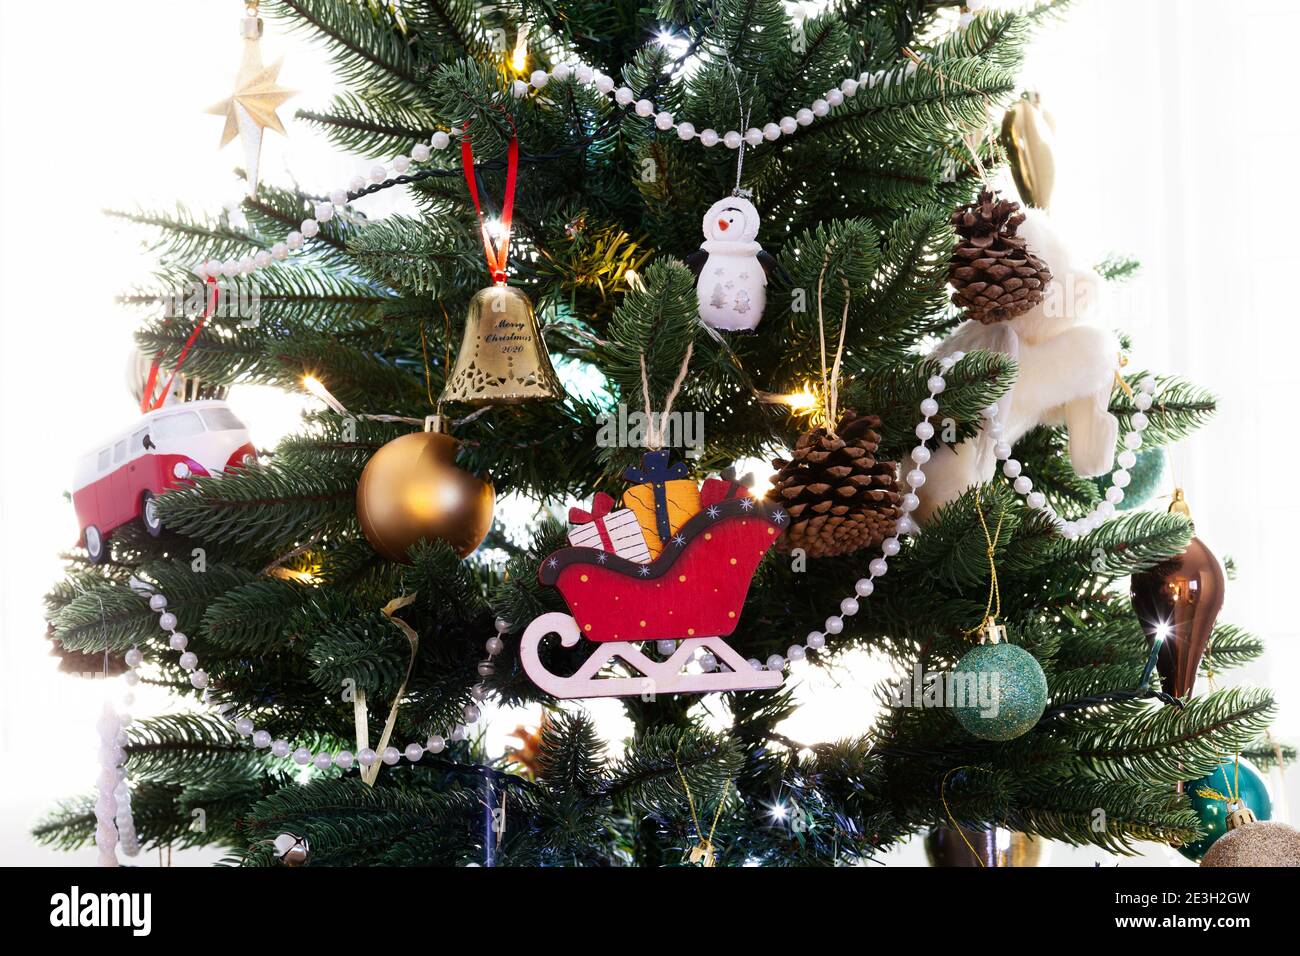 Arbre de Noël rétroéclairé avec décorations pour arbres de Noël prises dans le jour Banque D'Images